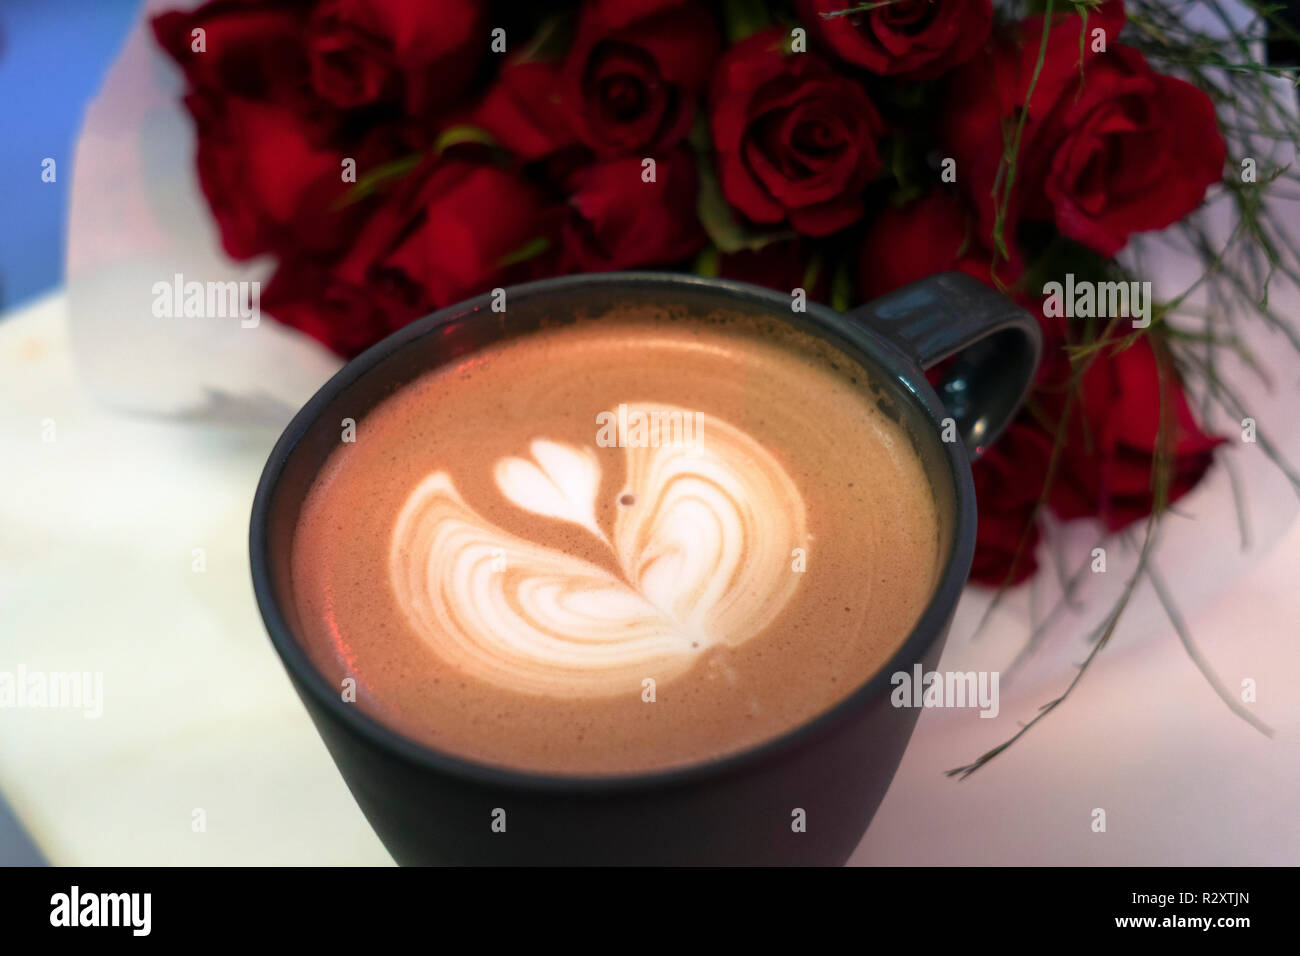 In Herzform Creme auf Kaffee mit roten Rosen Blumenstrauß auf dem Tisch Stockfoto